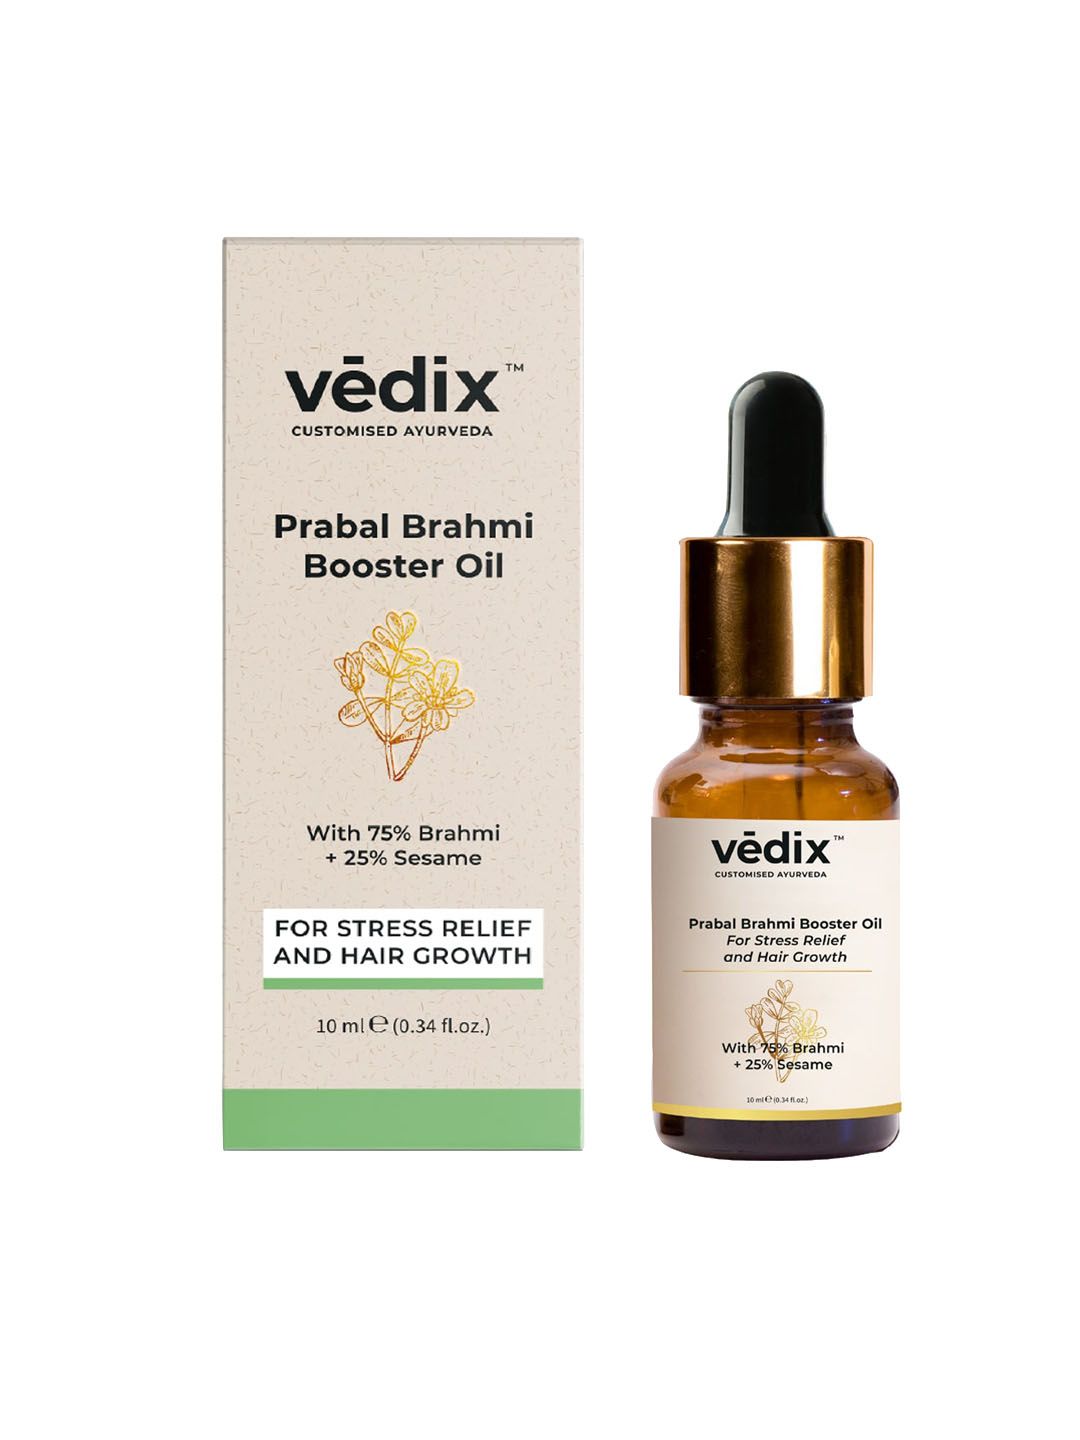 Vedix Prabal Brahmi Booster Oil - 10 ml Price in India